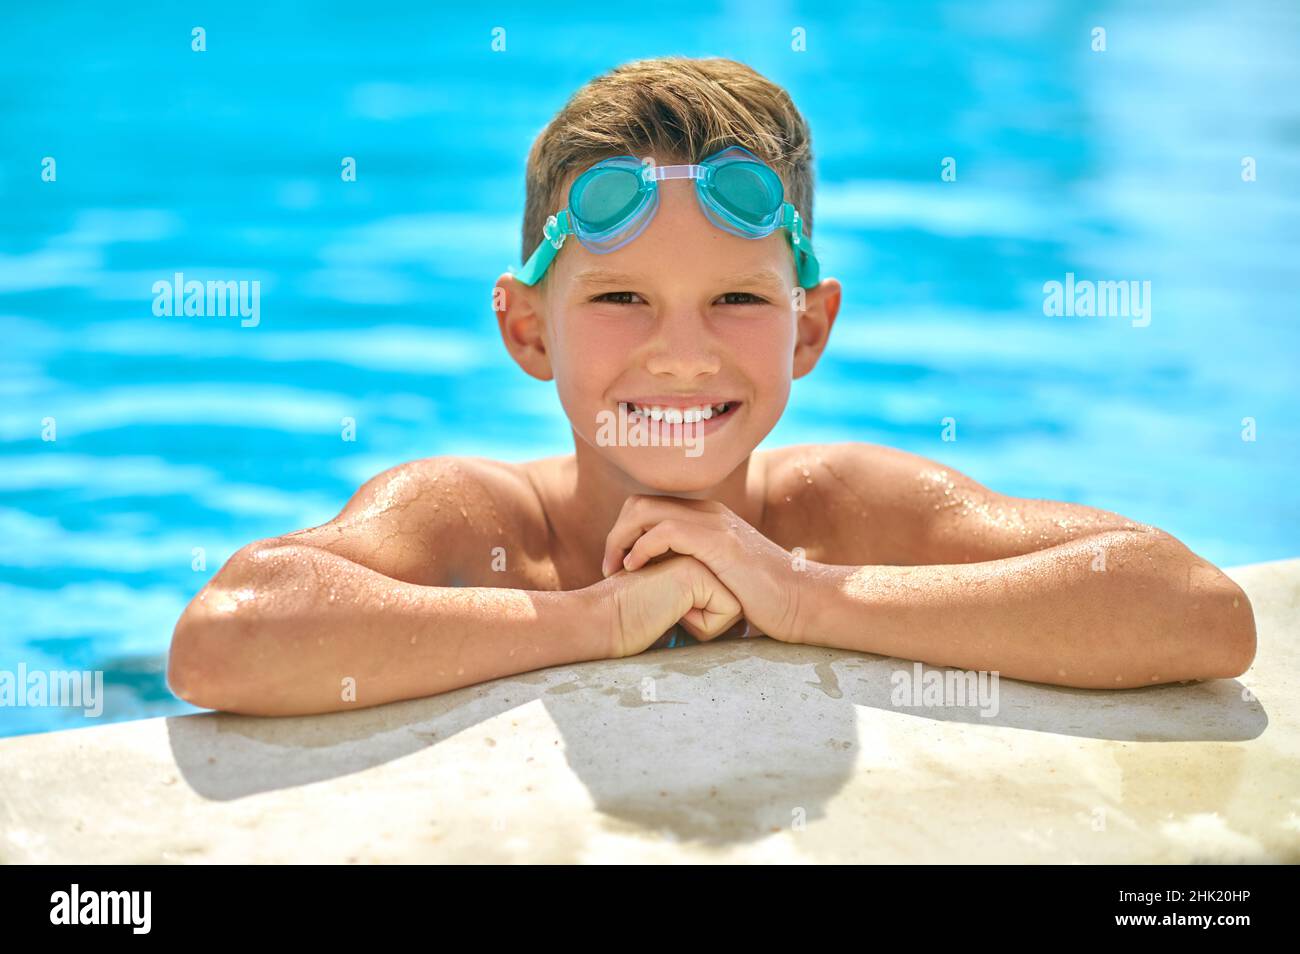 Junge guckt aus dem Pool und schaut auf die Kamera Stockfoto